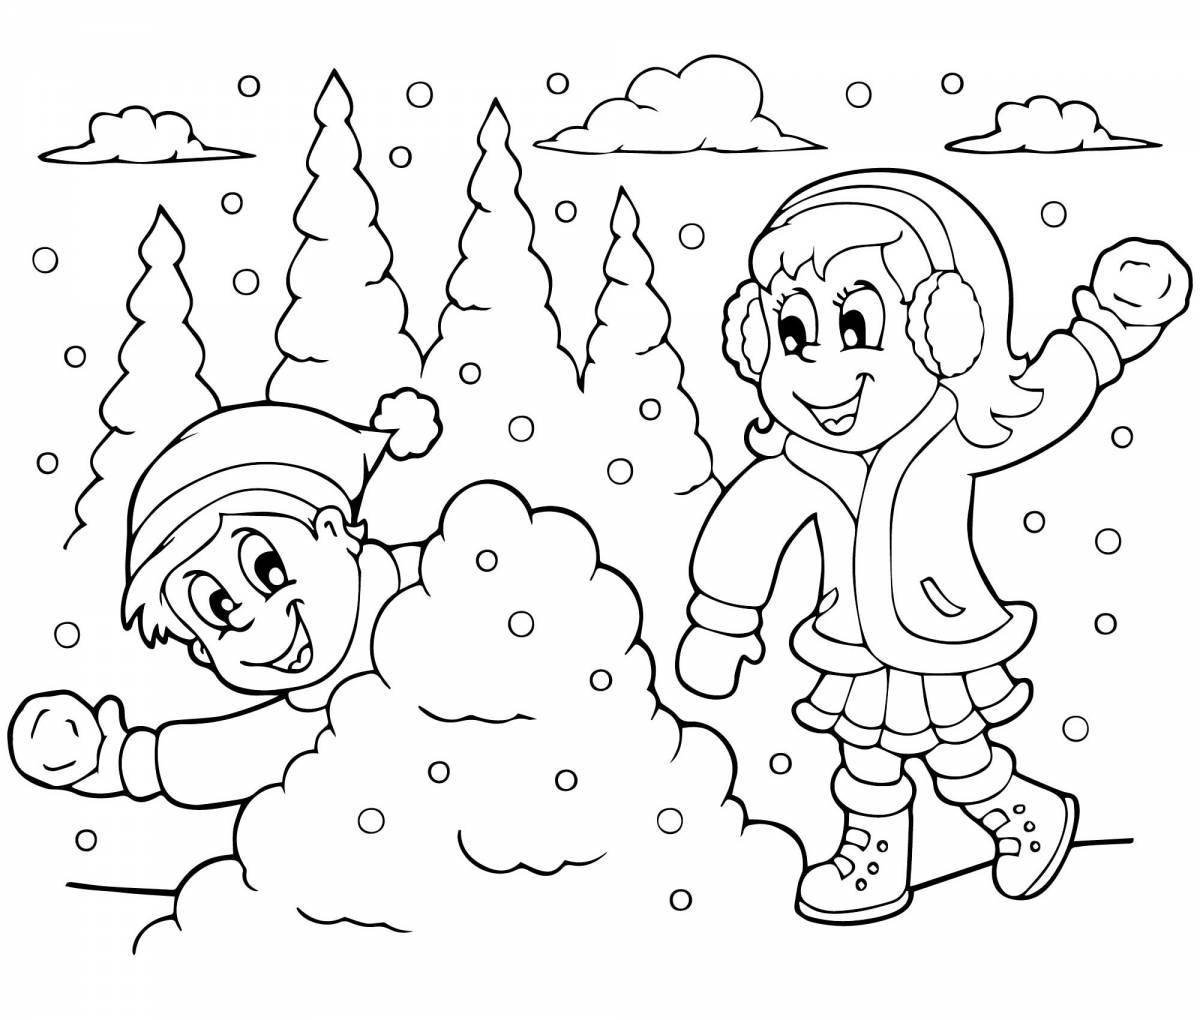 Bright children's walks in winter